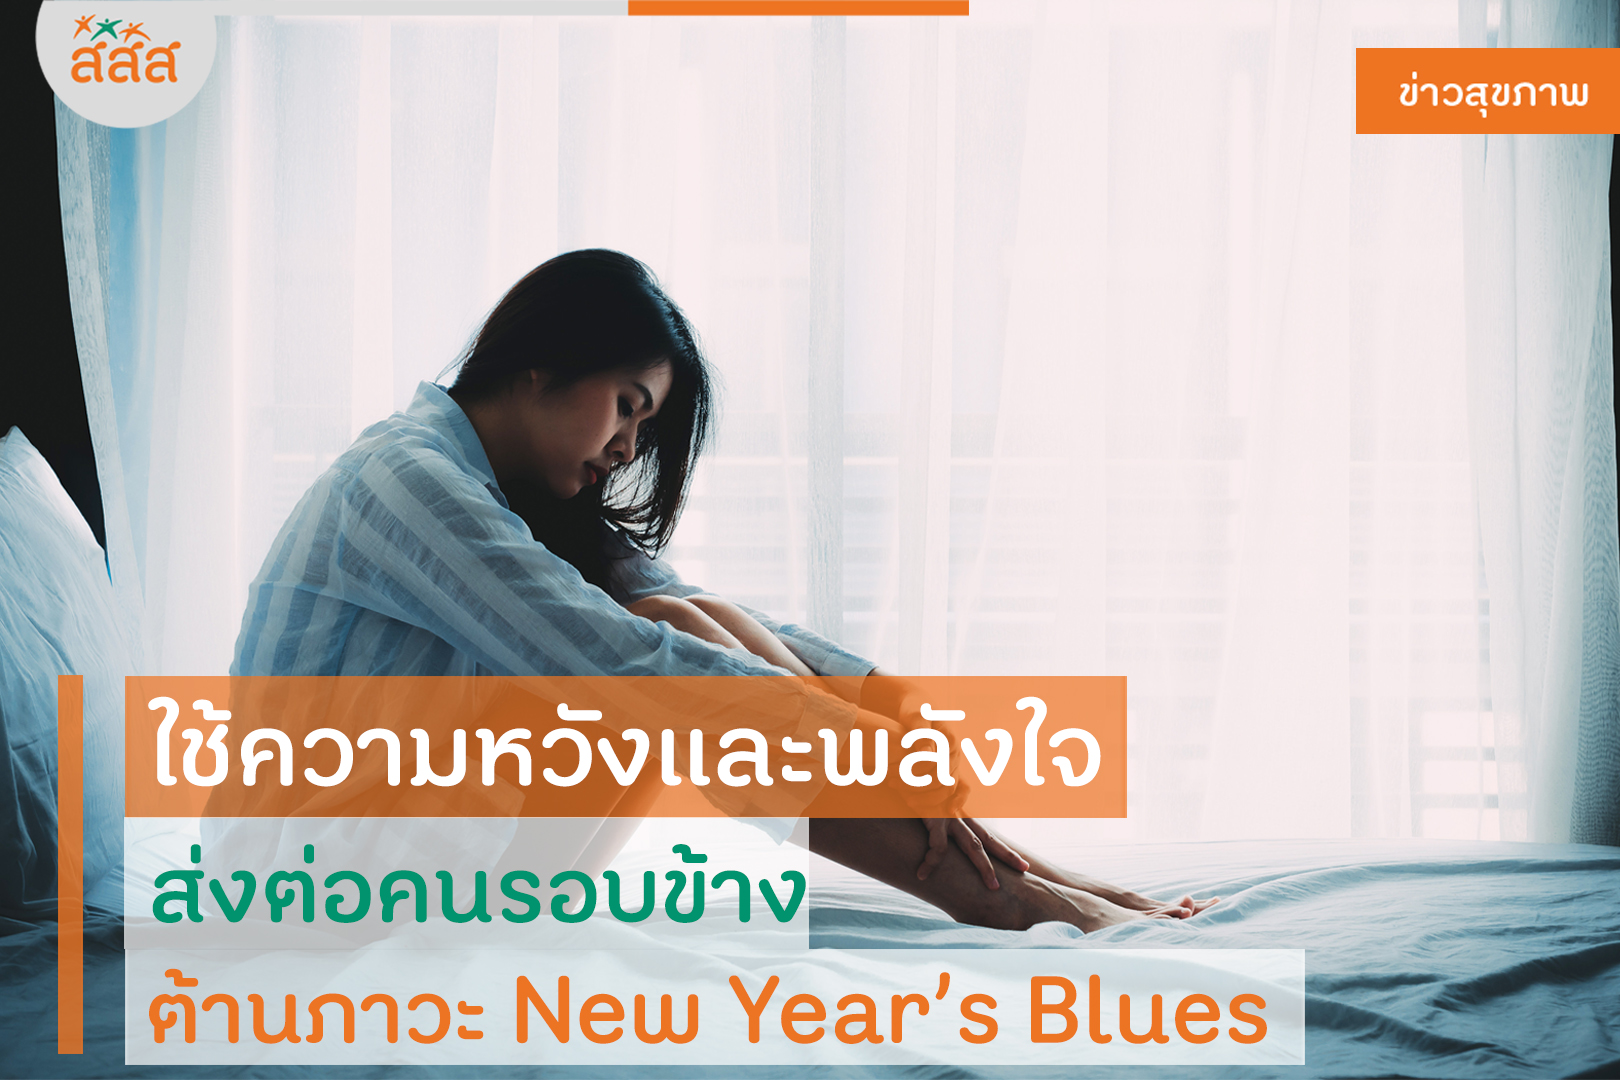 ใช้ความหวังและพลังใจ ส่งต่อคนรอบข้าง ต้านภาวะ New Year’s Blues thaihealth